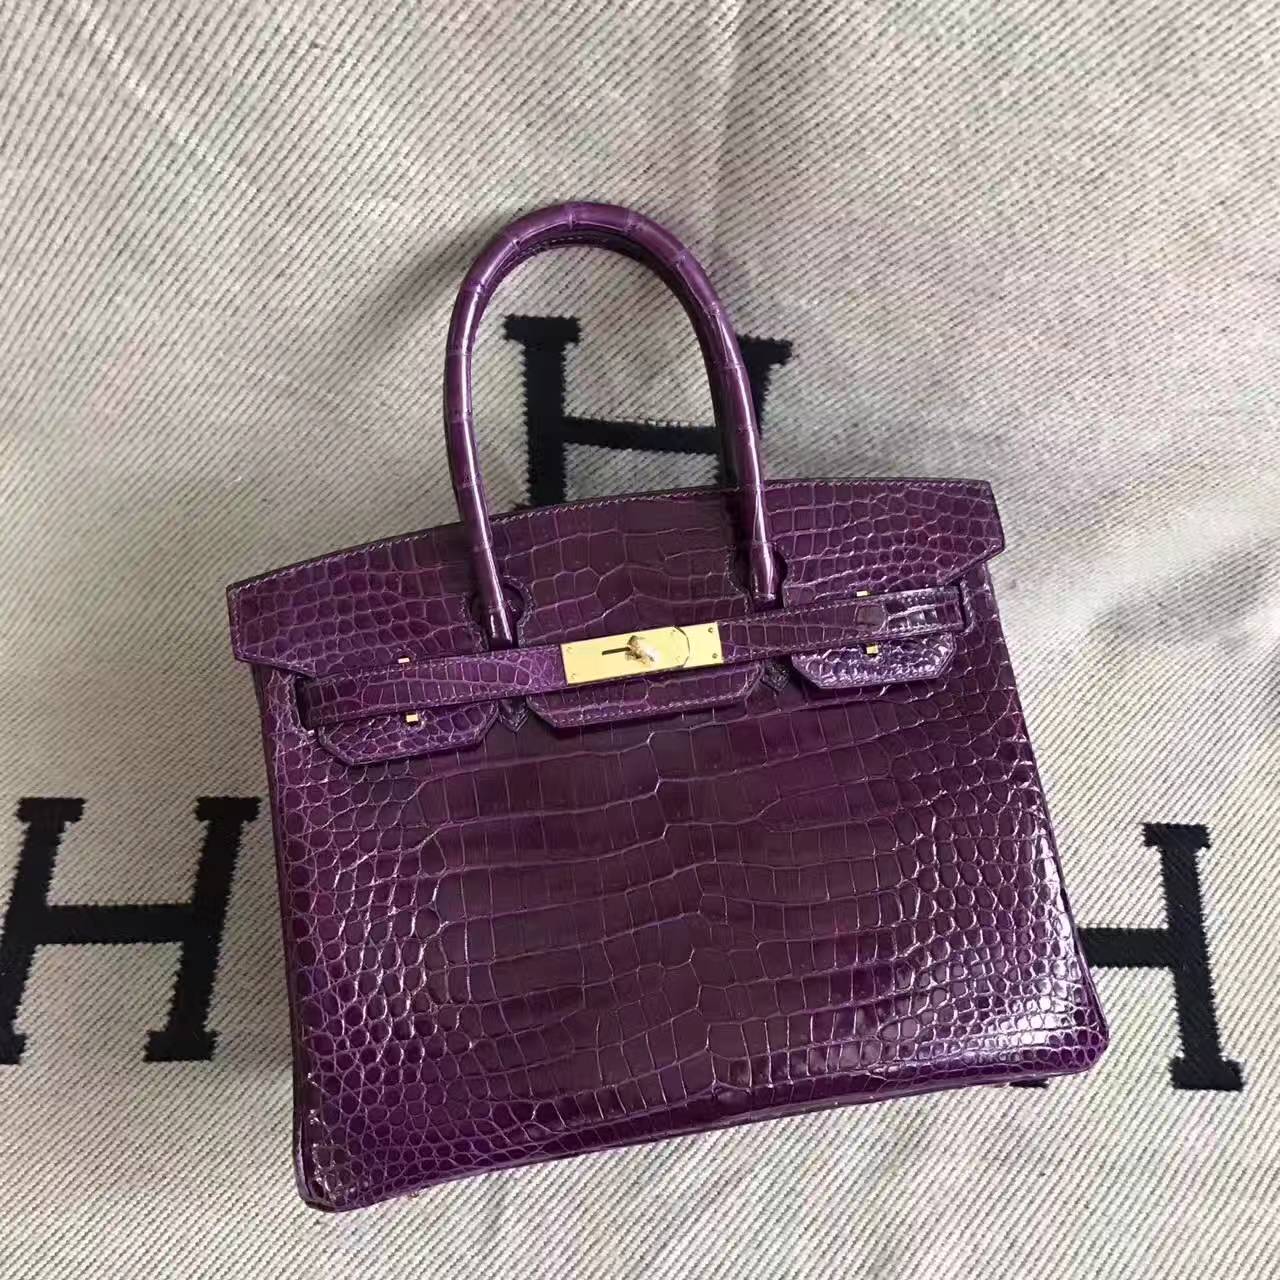 New Arrival Hermes Porosus Shiny Leather Birkin Bag 30cm in 5C Violet